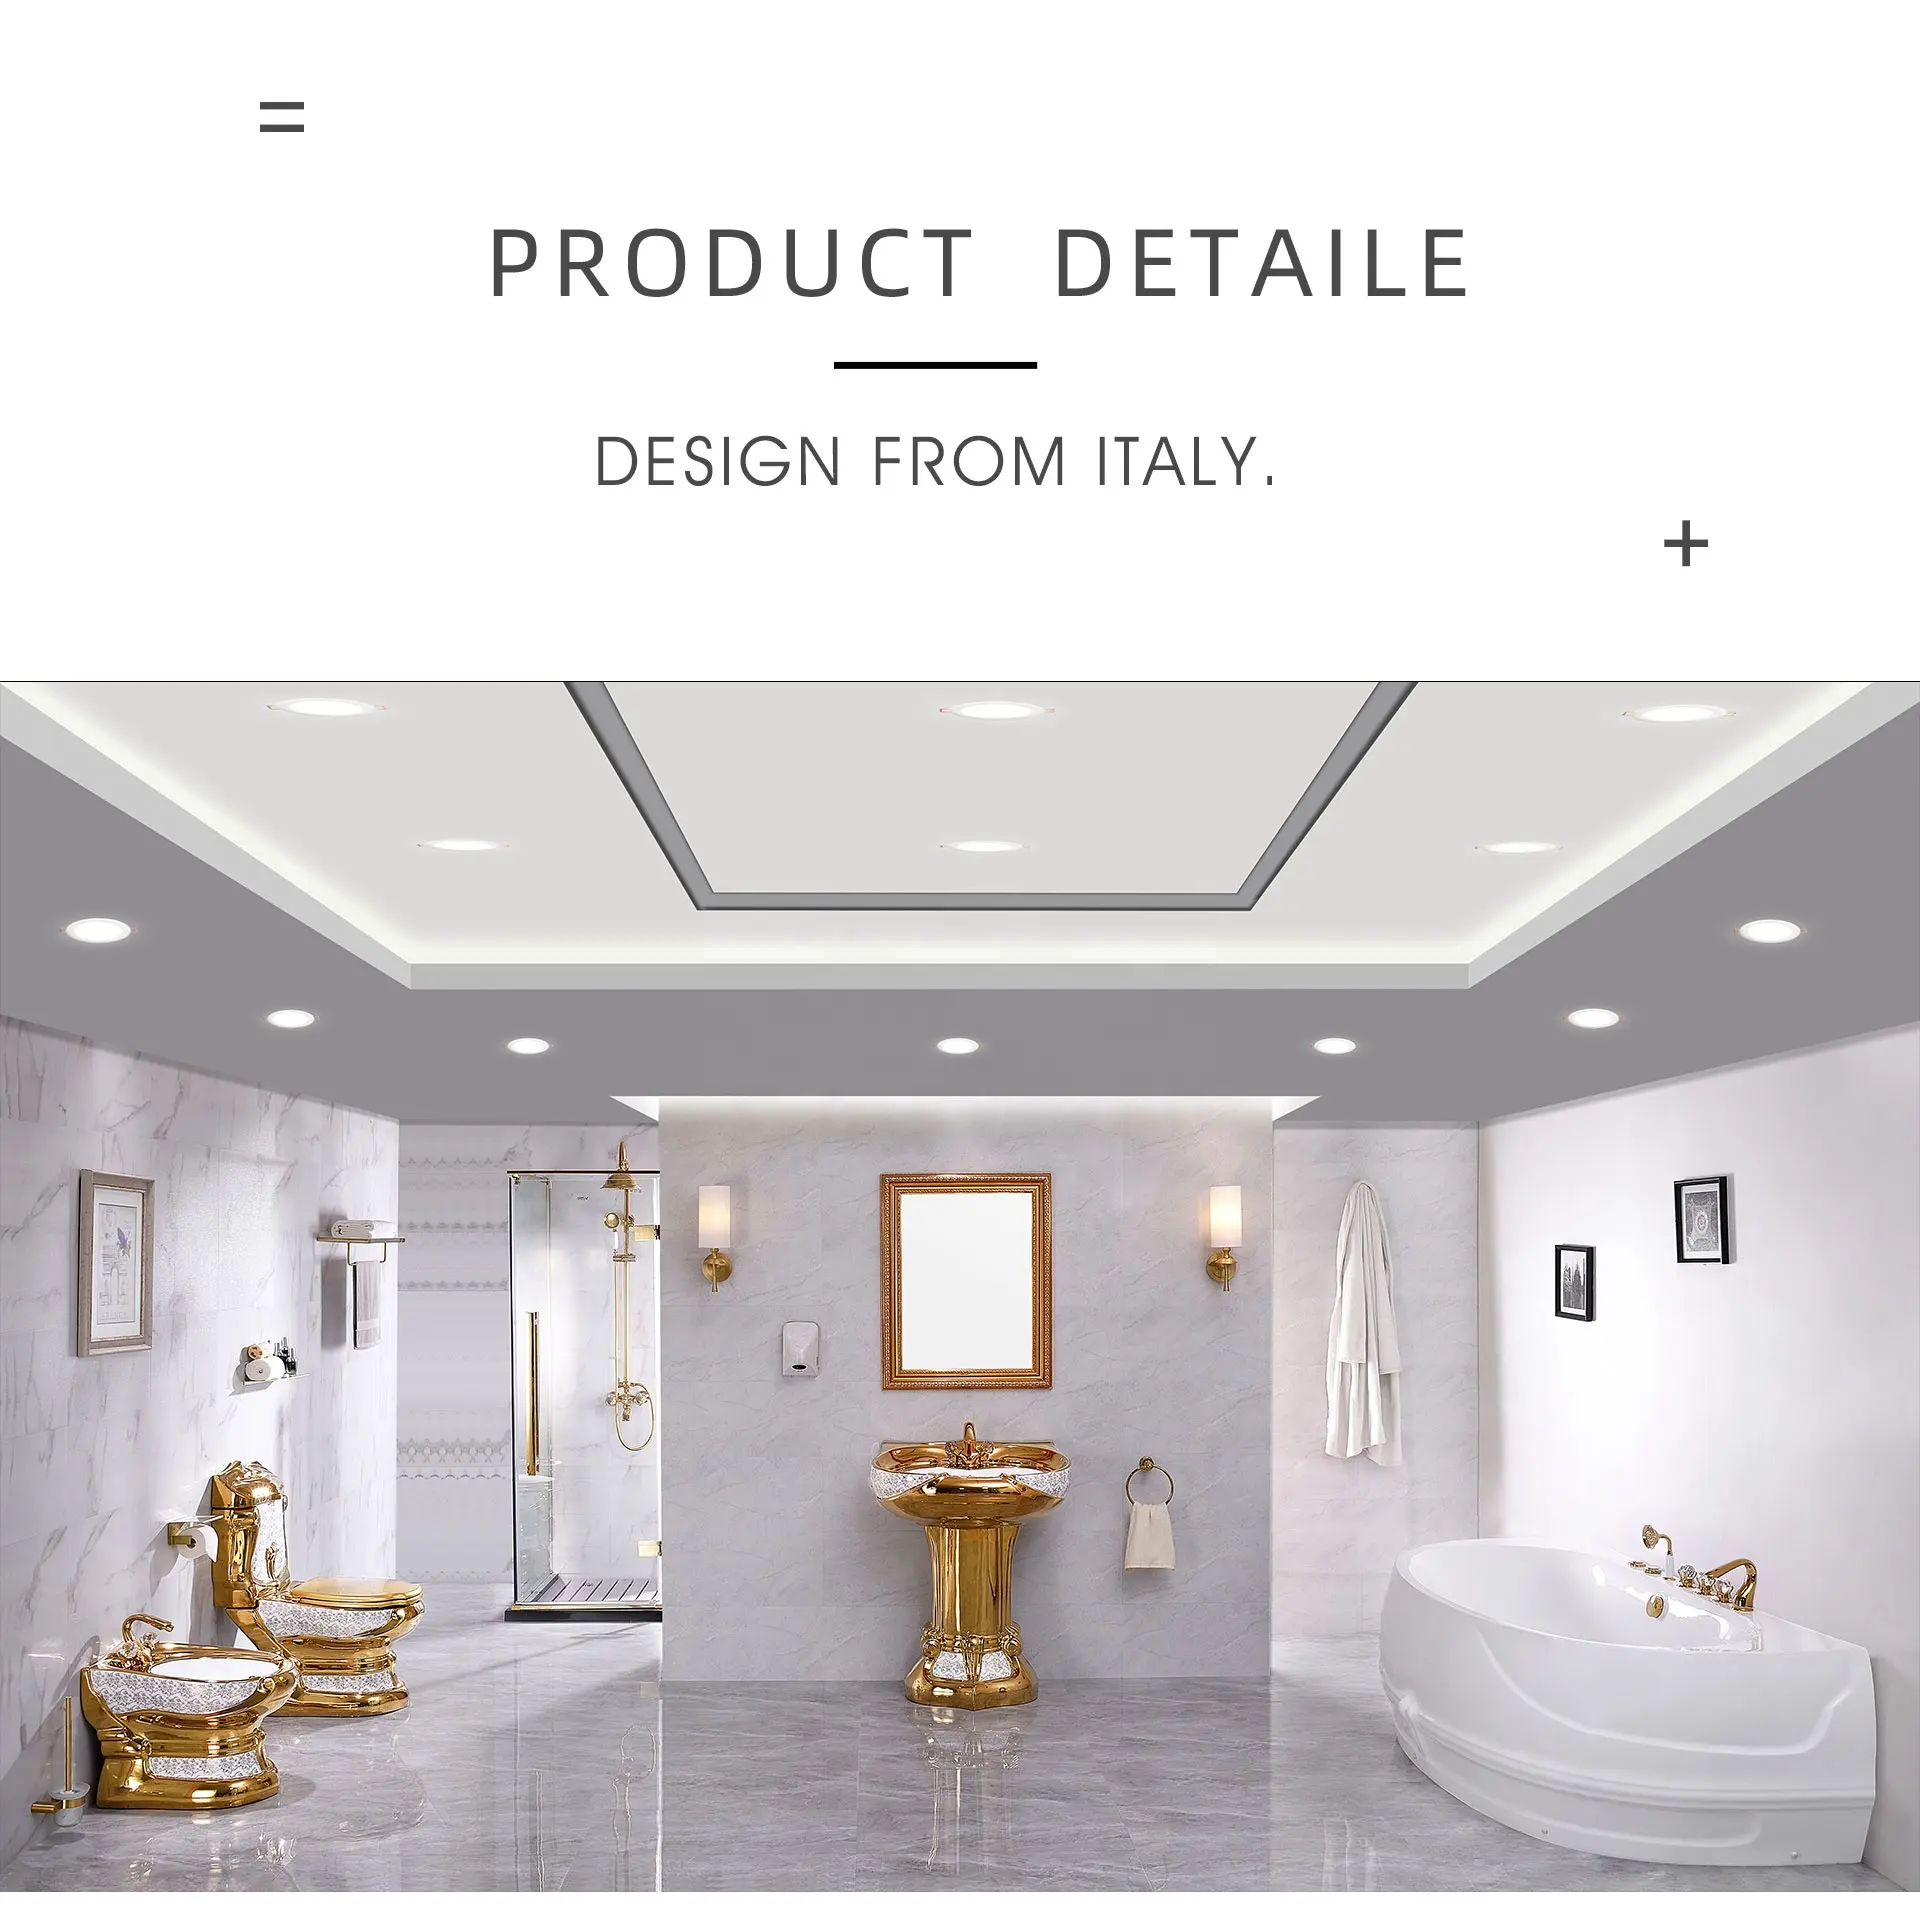 Vieany vaso sanitário de ouro estilo europeu, duas peças, estilo europeu, dourado, cerâmica, novo design dourado, banheiro, J-971